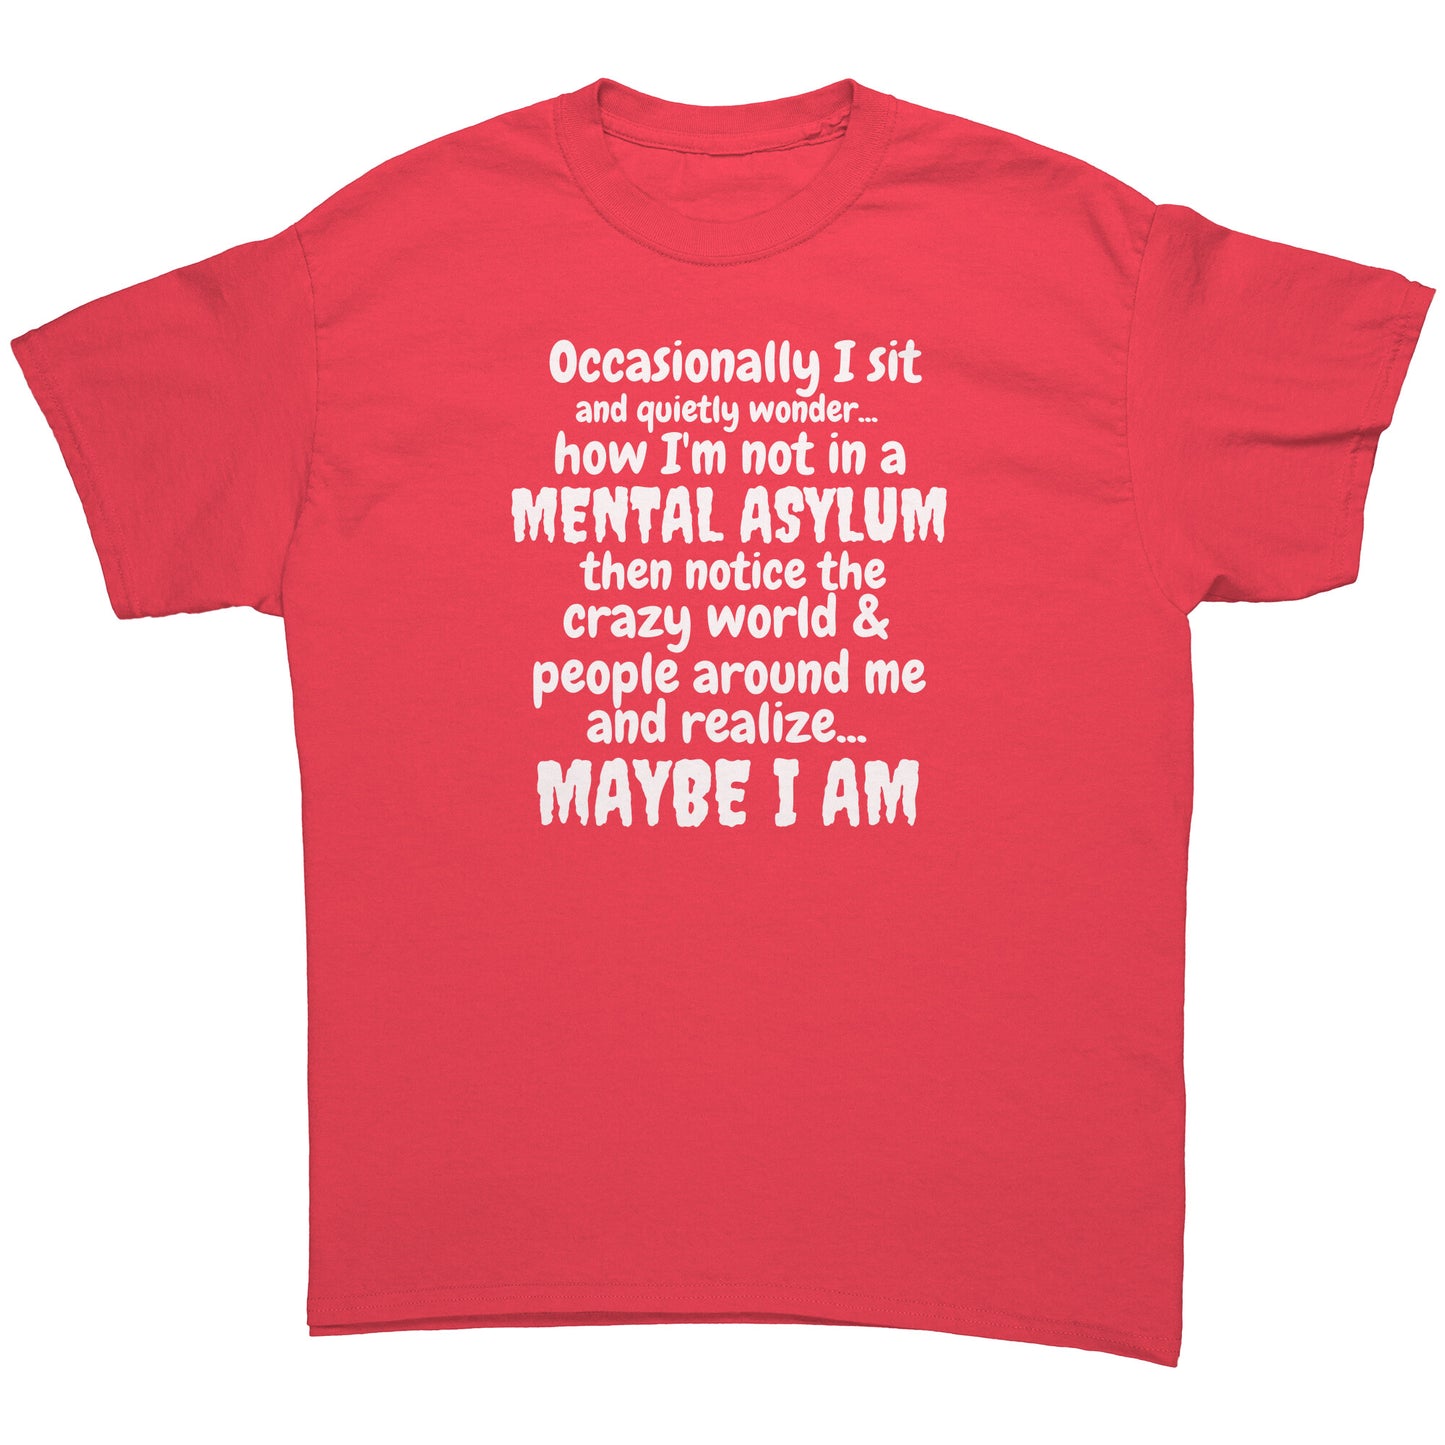 Am I in a Mental Asylum Funny Shirt